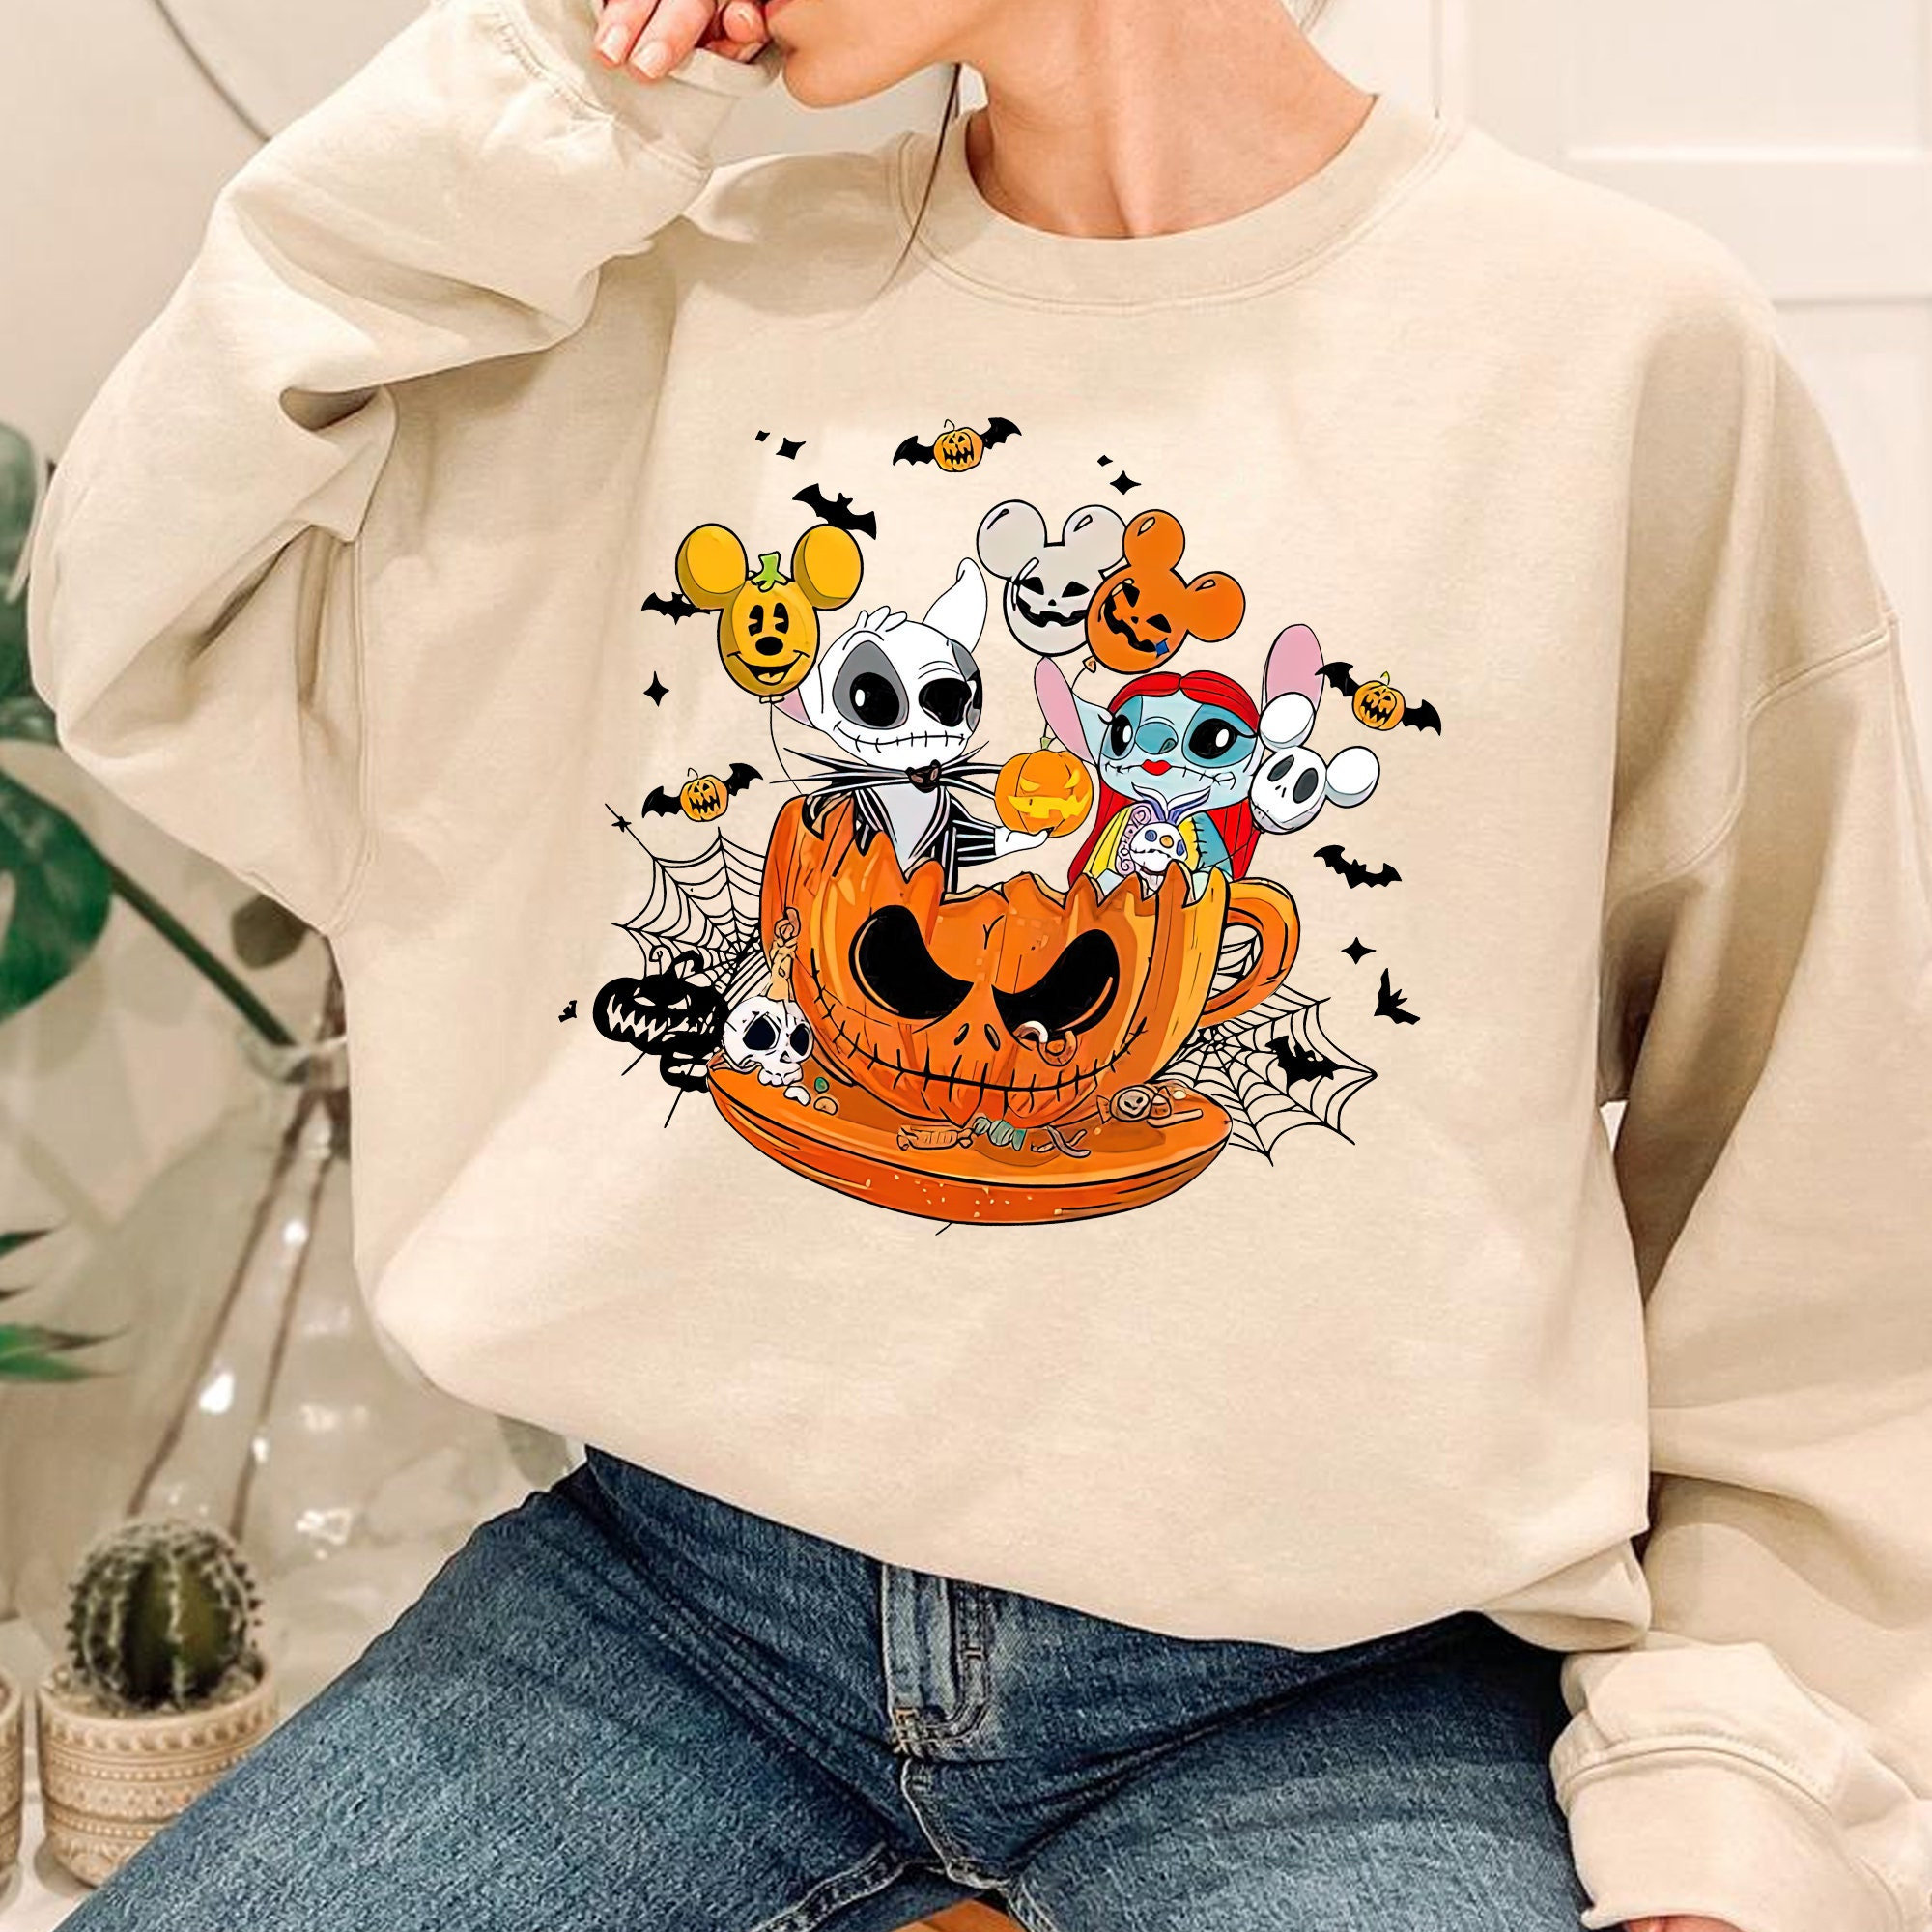 Stitch Embroidered Sweatshirt, Stitch Horror Halloween Sweater, Disney  Sweater